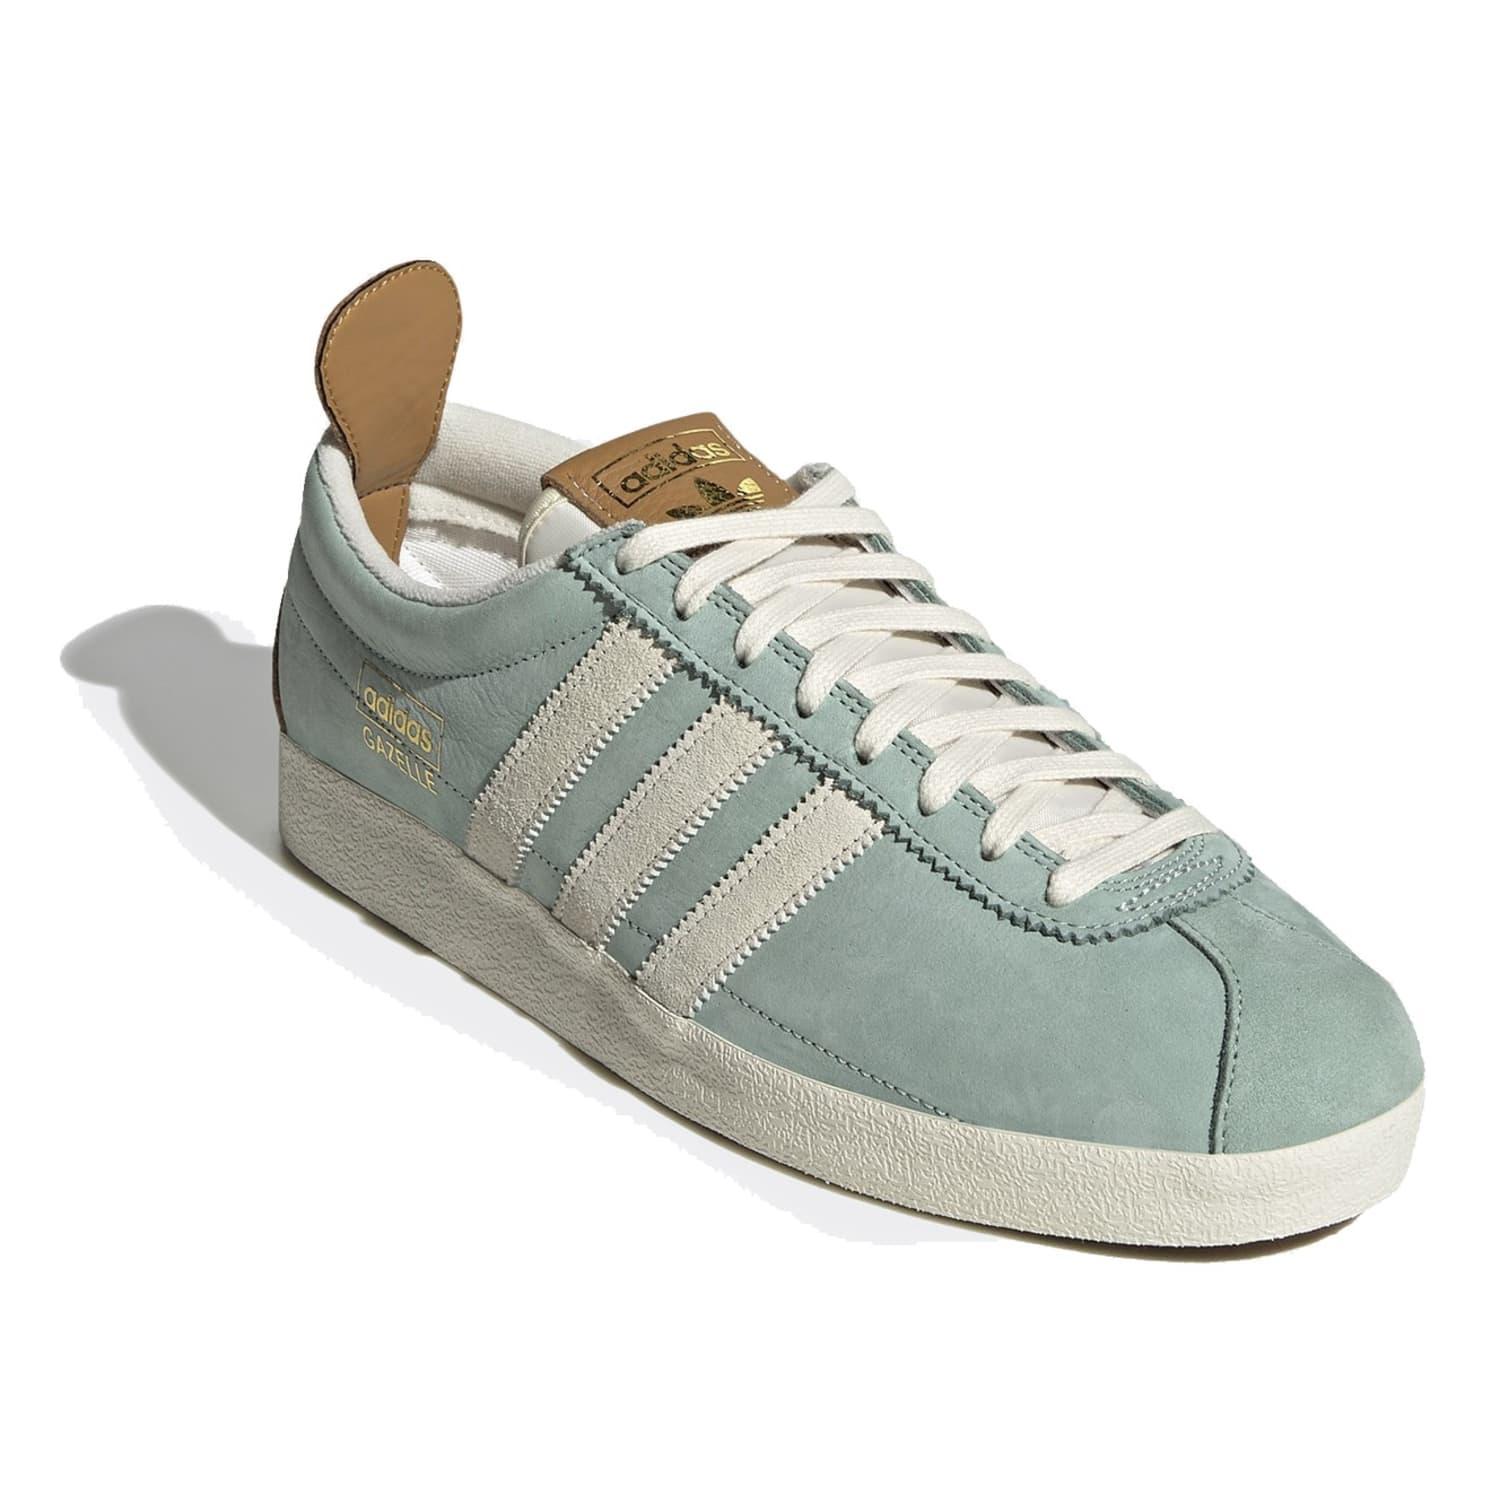 adidas Gazelle Vintage Schuhe Grün Tint & Creme Weiß für Herren | Lyst DE